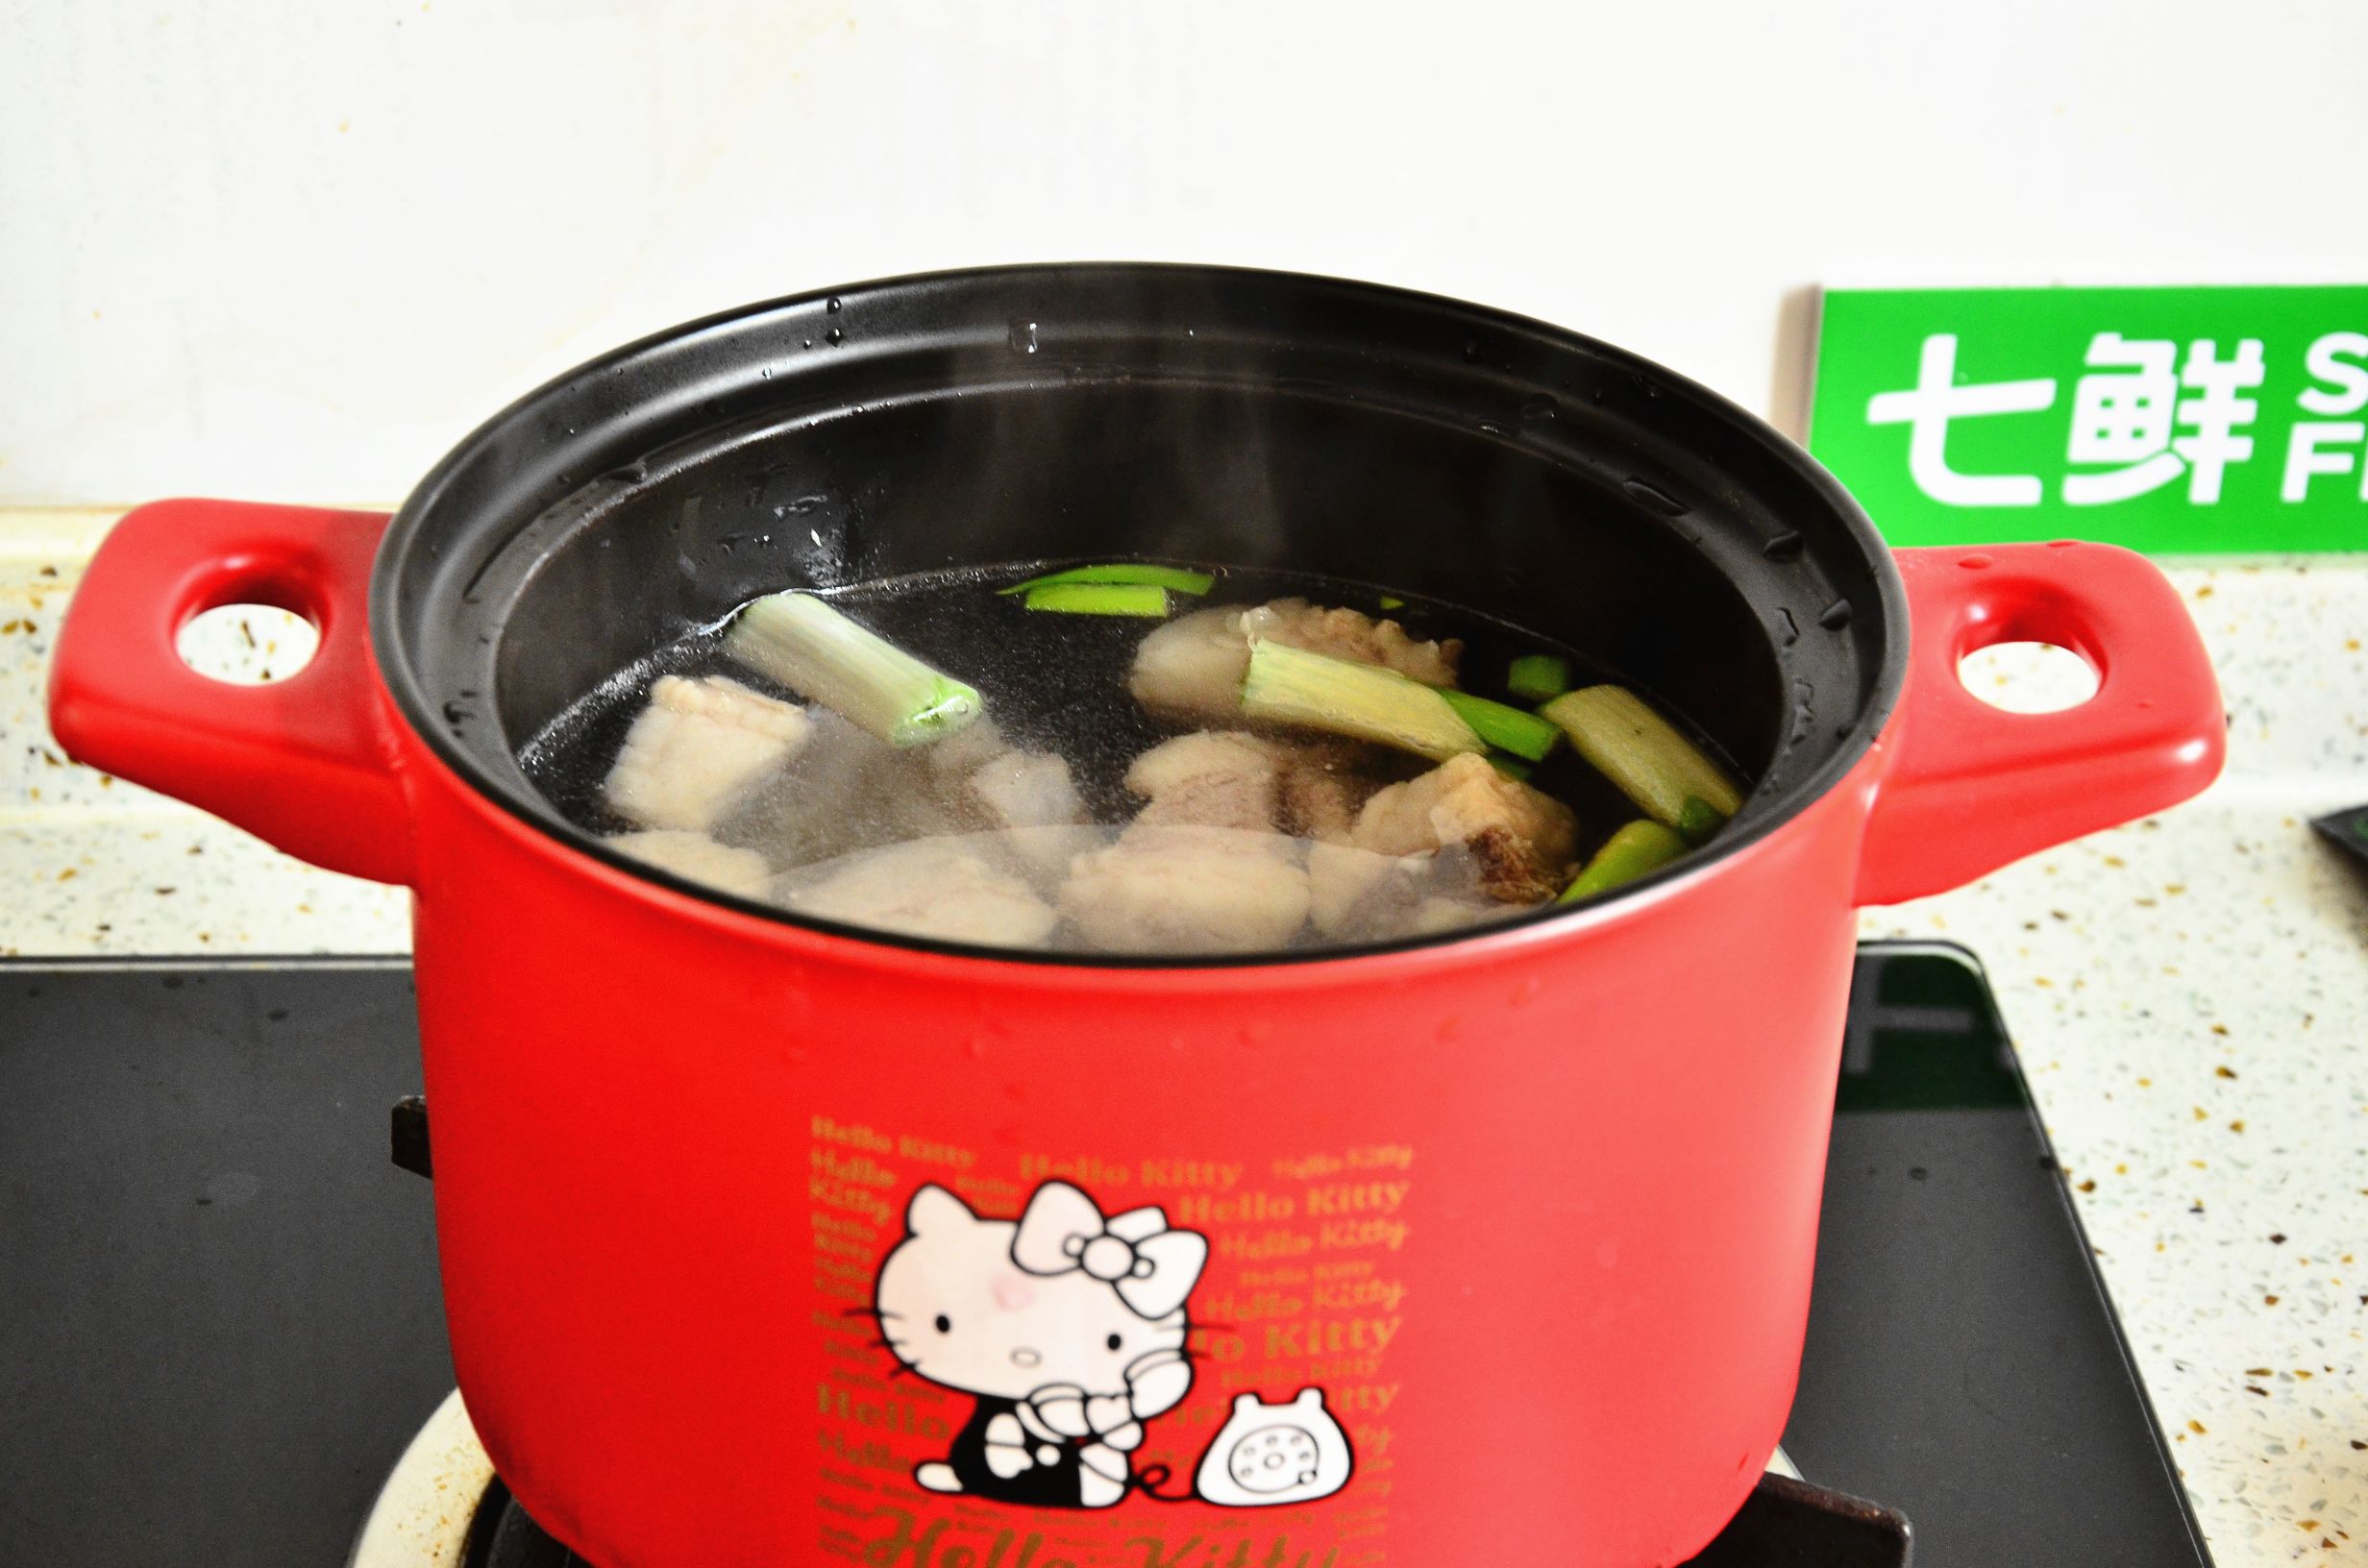 Lamb Chops and Yam Soup recipe